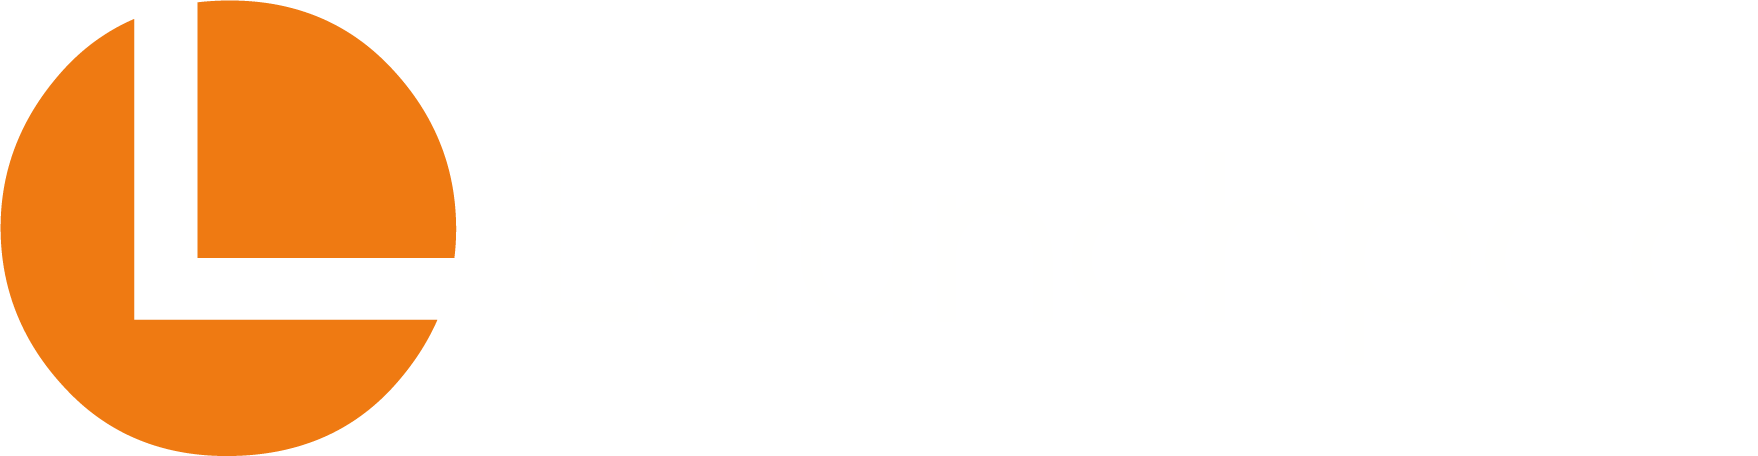 Launchpad orange logo on white background